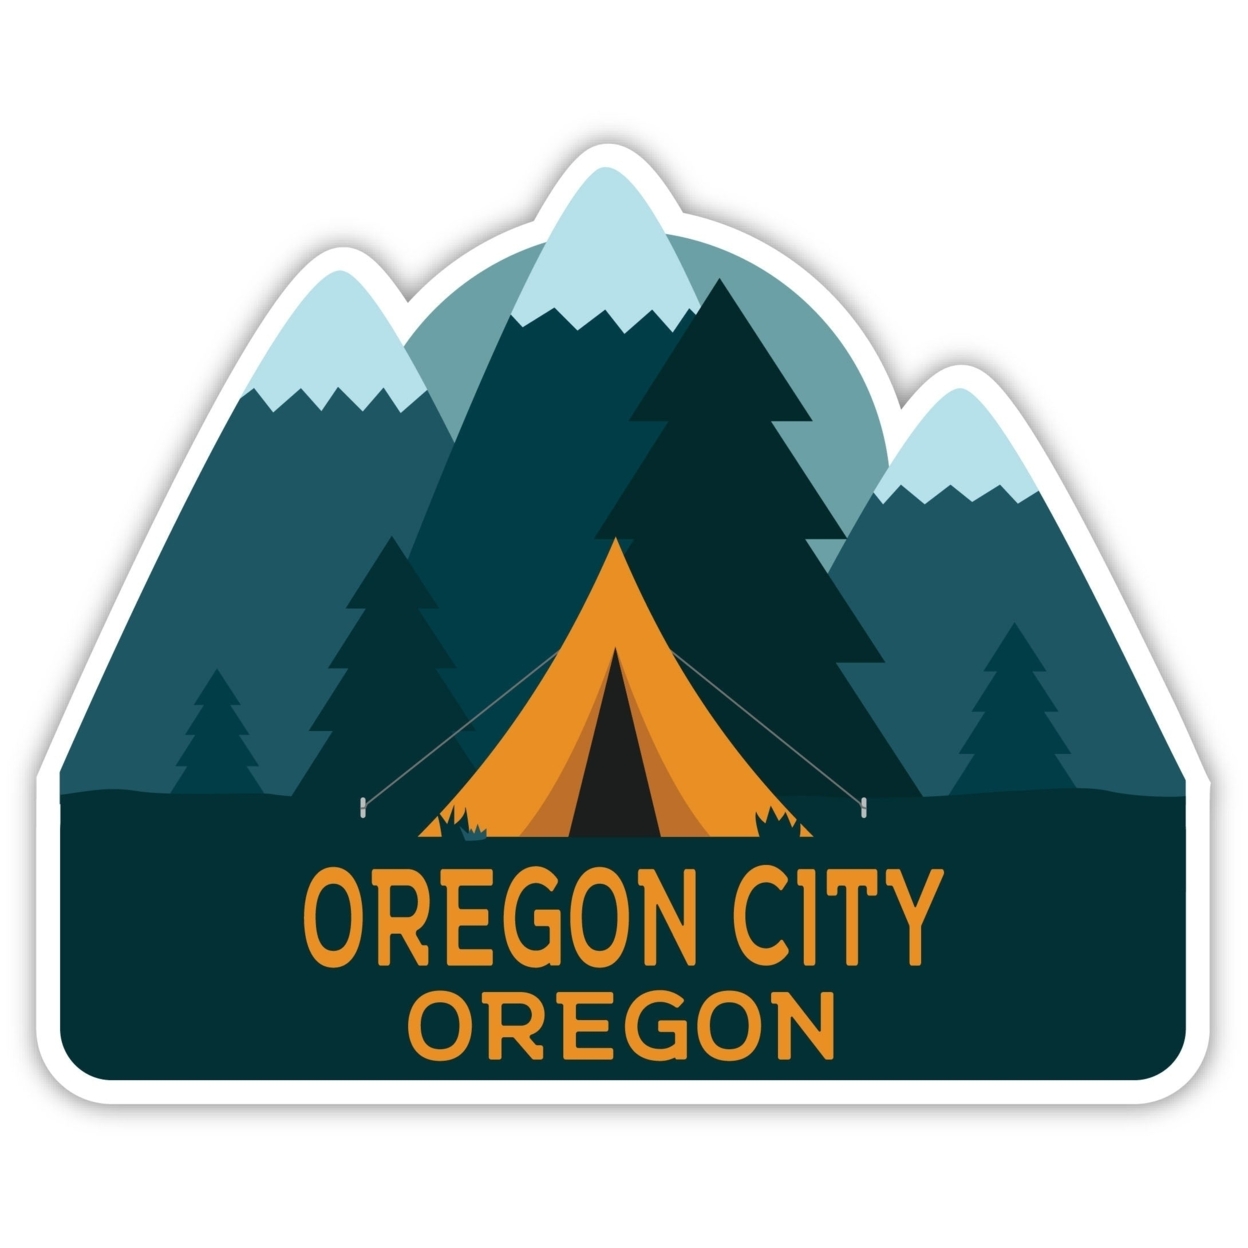 Oregon City Oregon Souvenir Decorative Stickers (Choose Theme And Size) - Single Unit, 4-Inch, Tent